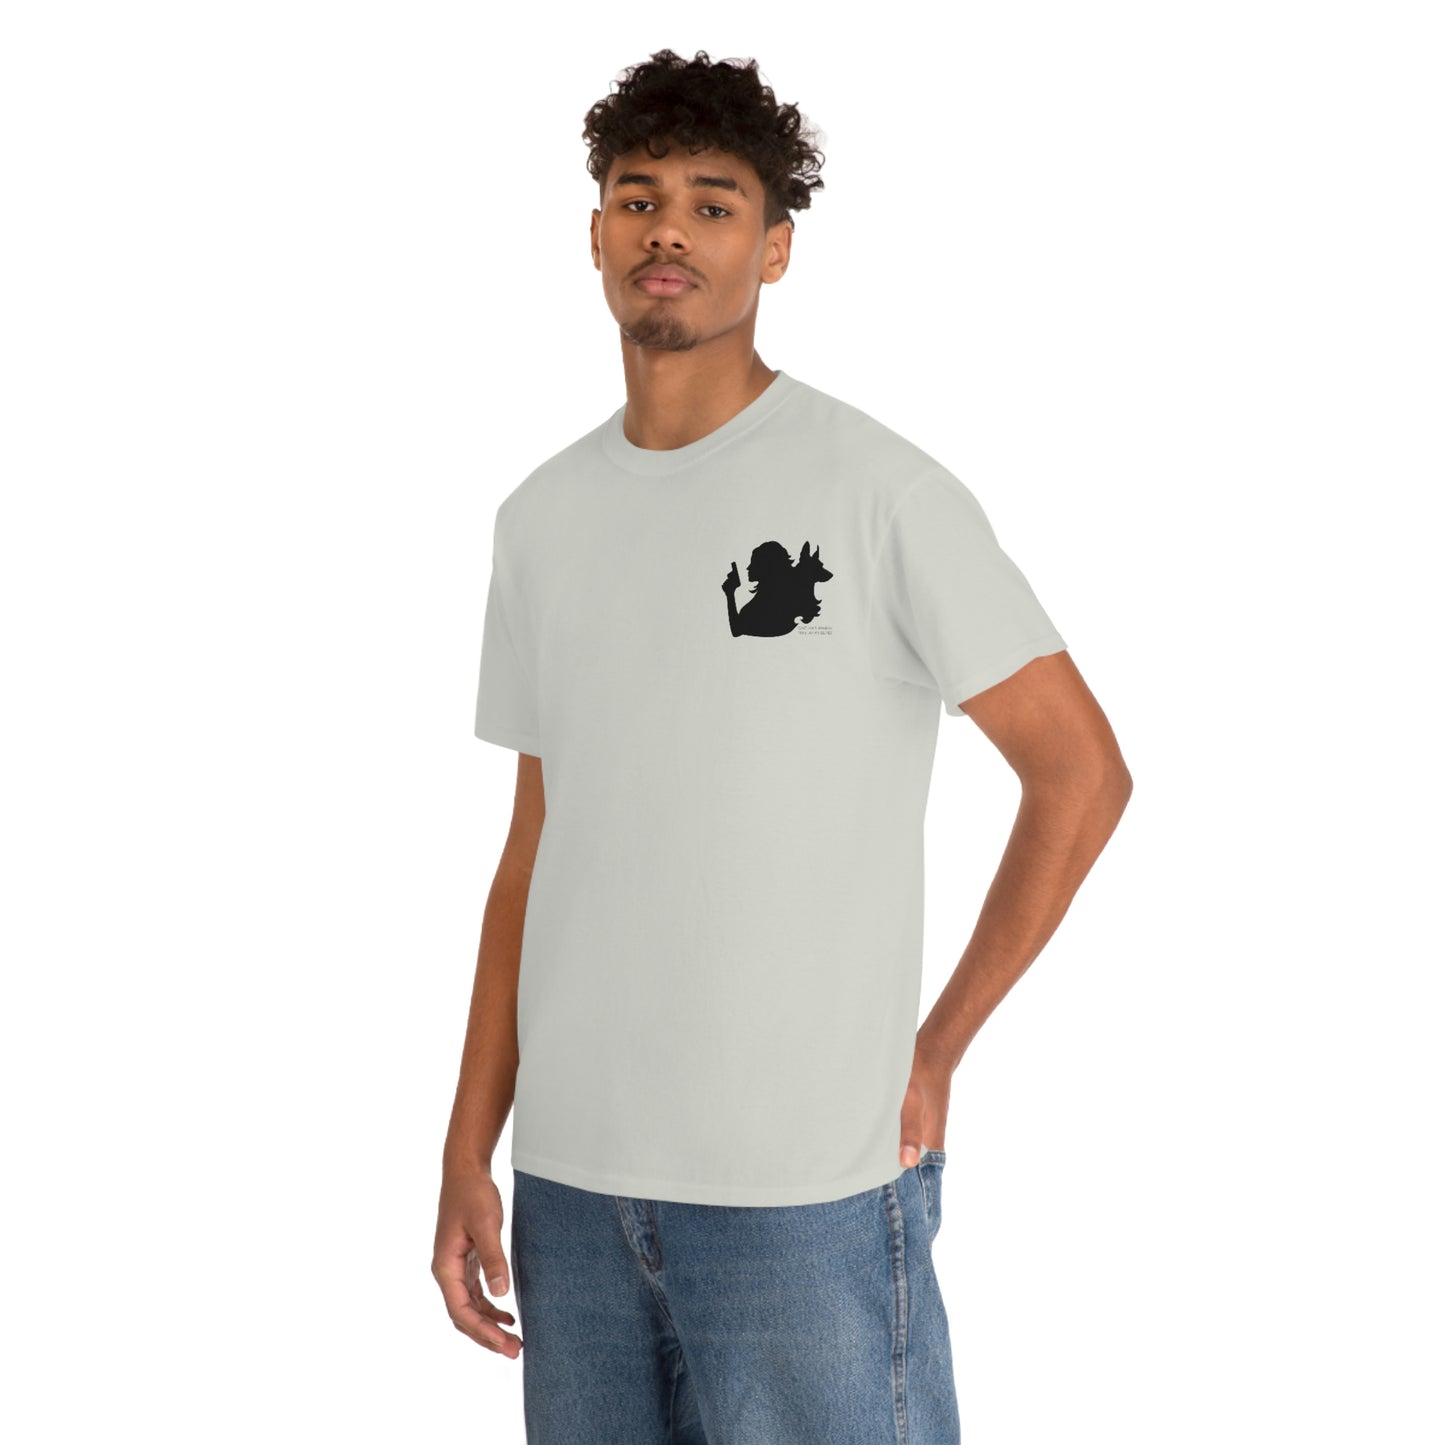 Unisex Heavy Cotton T-shirt